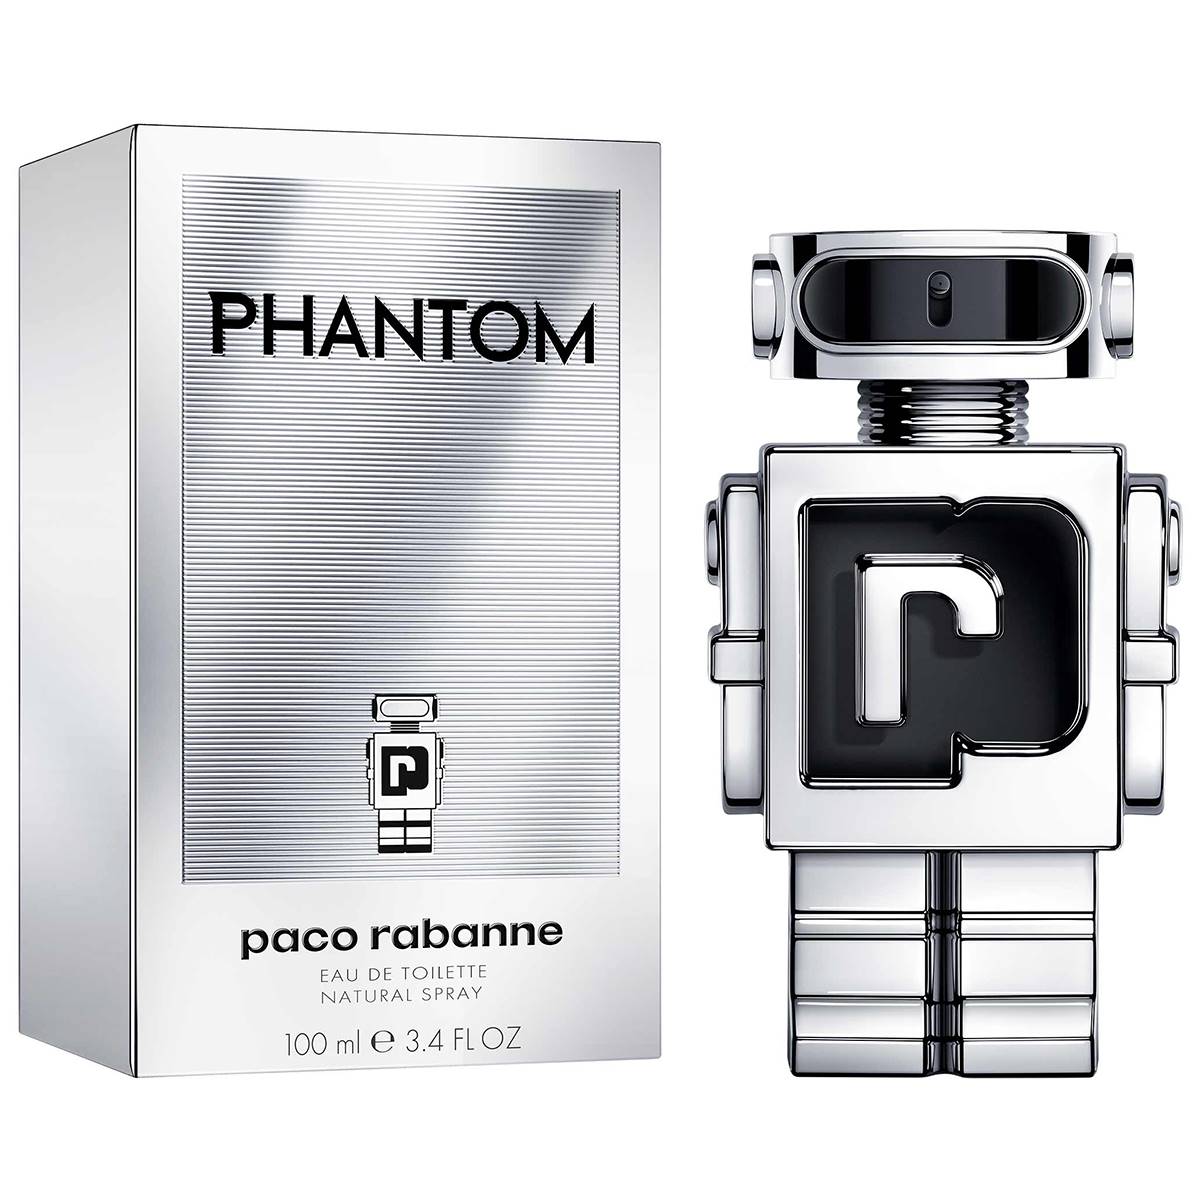 Paco Rabanne Eau de Toilette Phantom for Men - 3.4 oz.